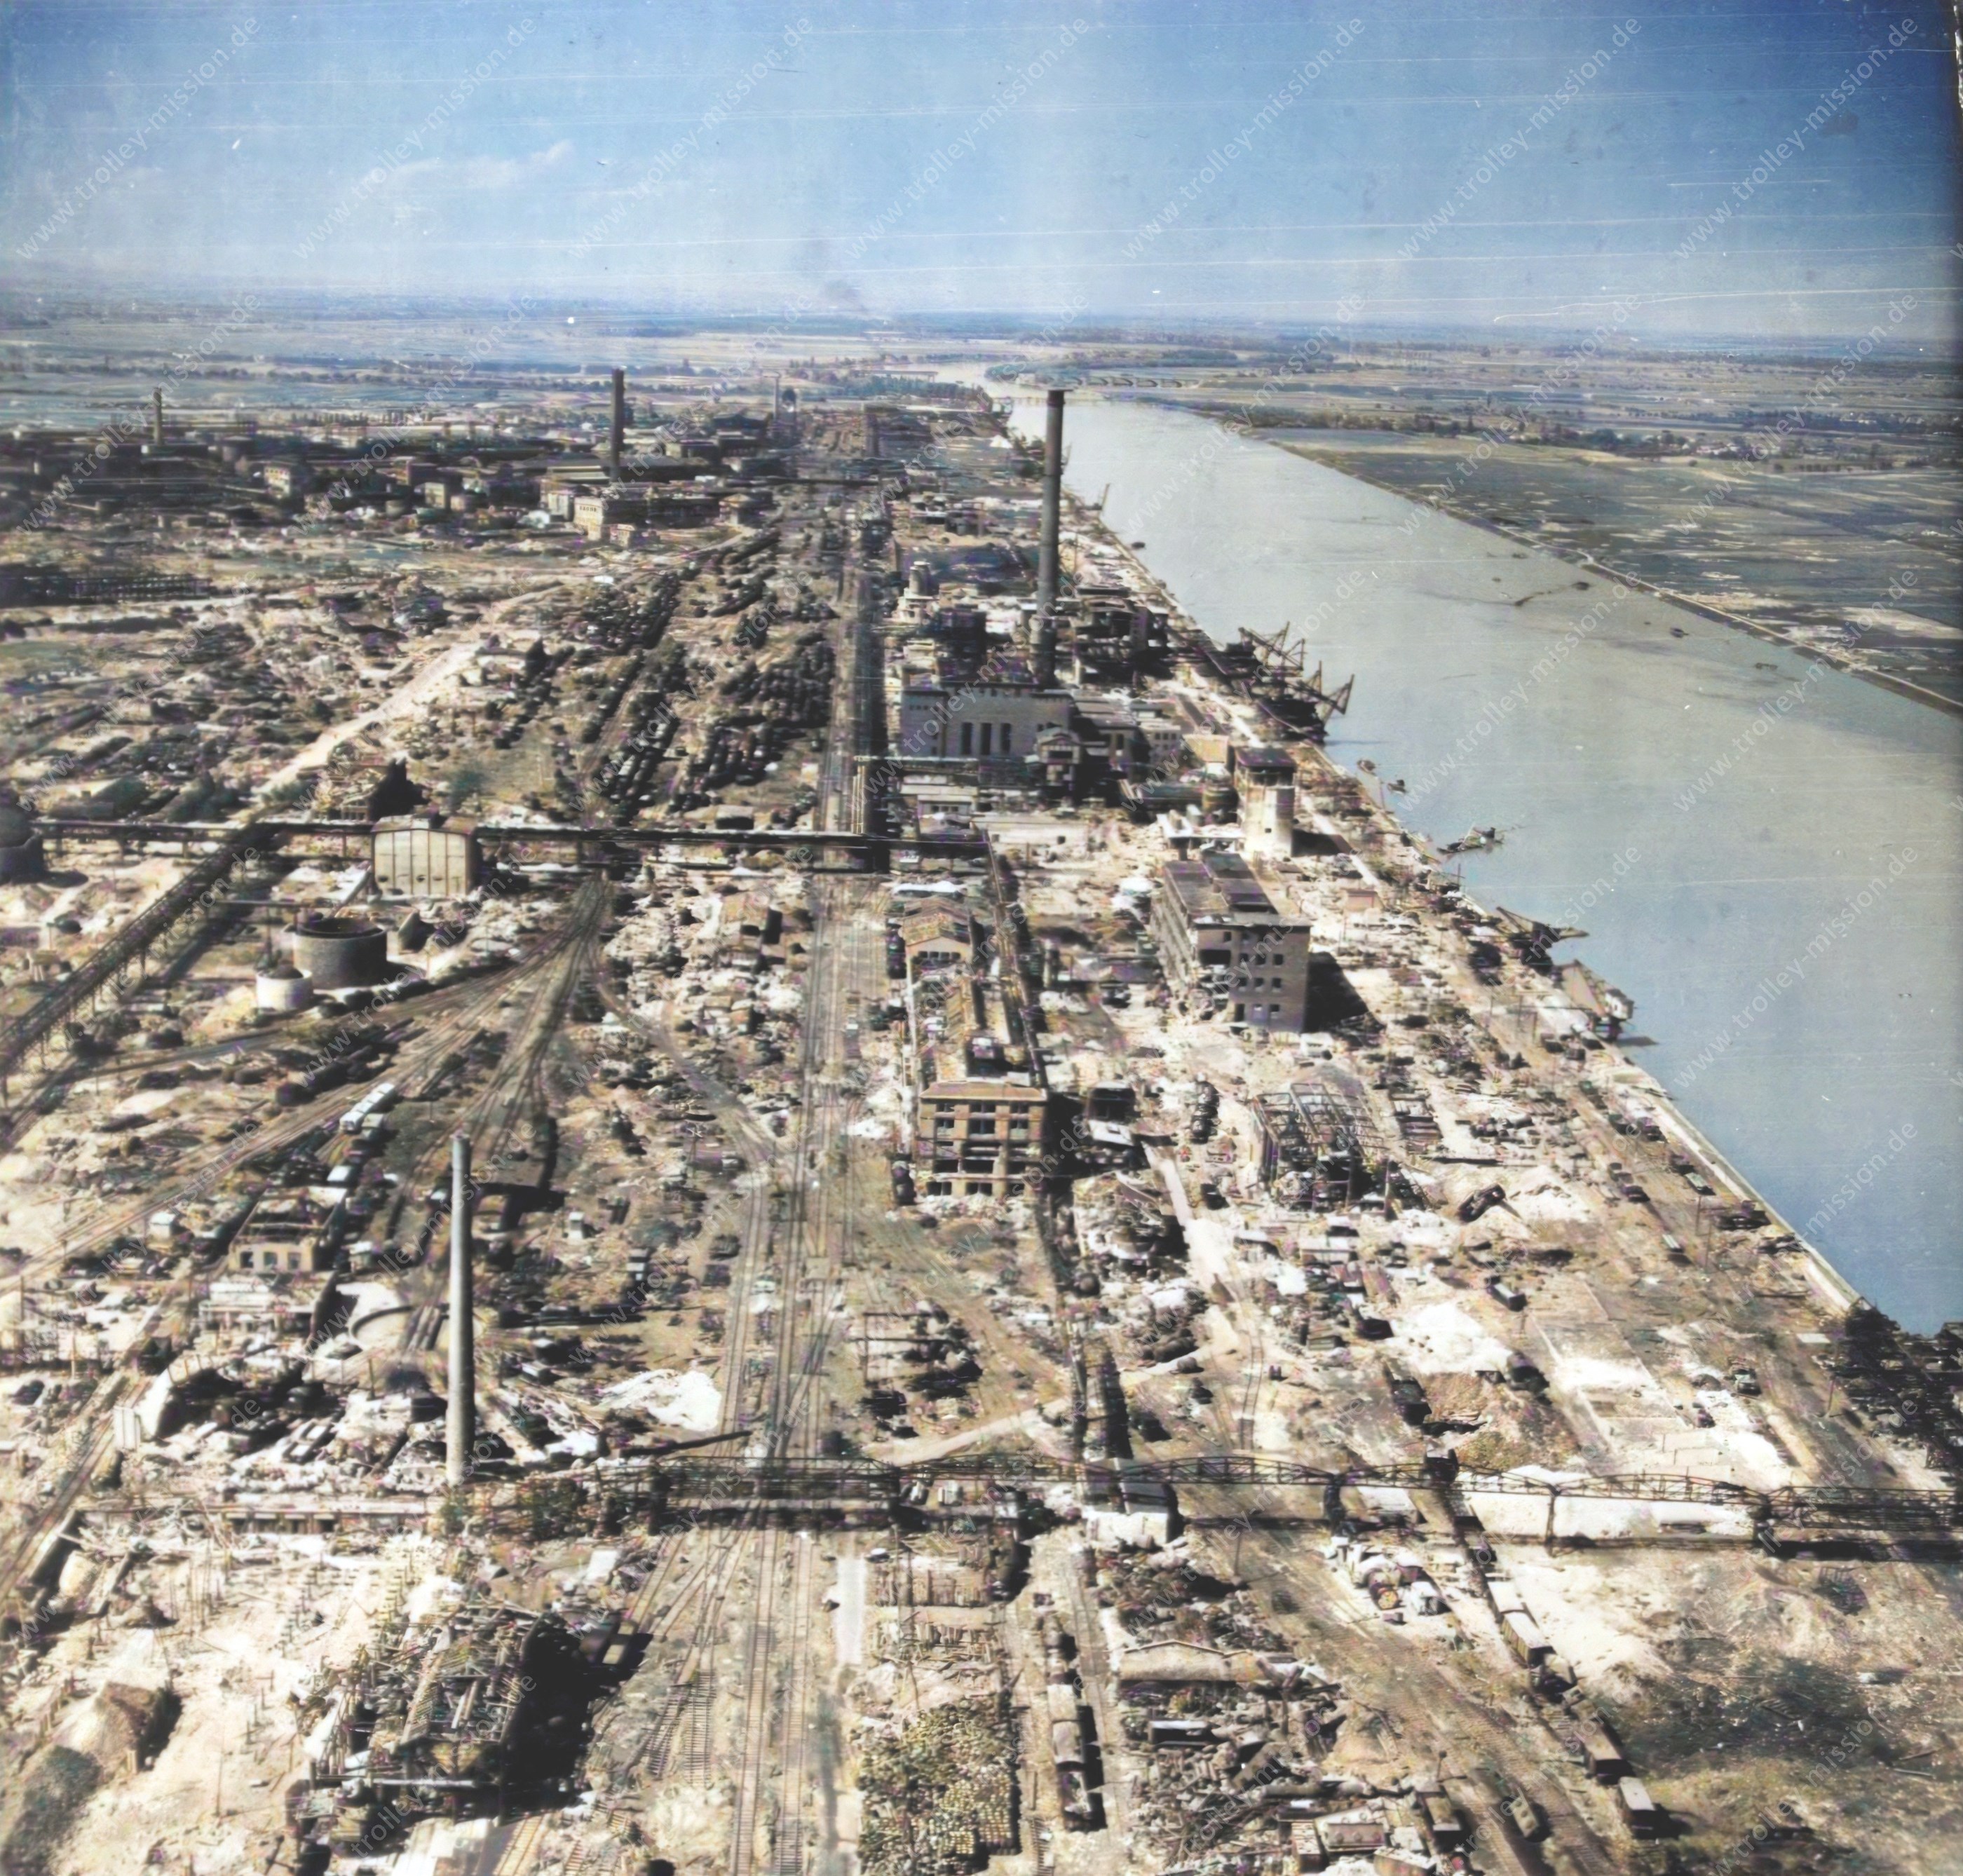 Die Luftbildaufnahme aus dem Jahre 1945 zeigt einen Überblick über das Werksgelände der ehemaligen I. G. Farbenindustrie AG in Ludwigshafen am Rhein nach den schweren Luftangriffen.